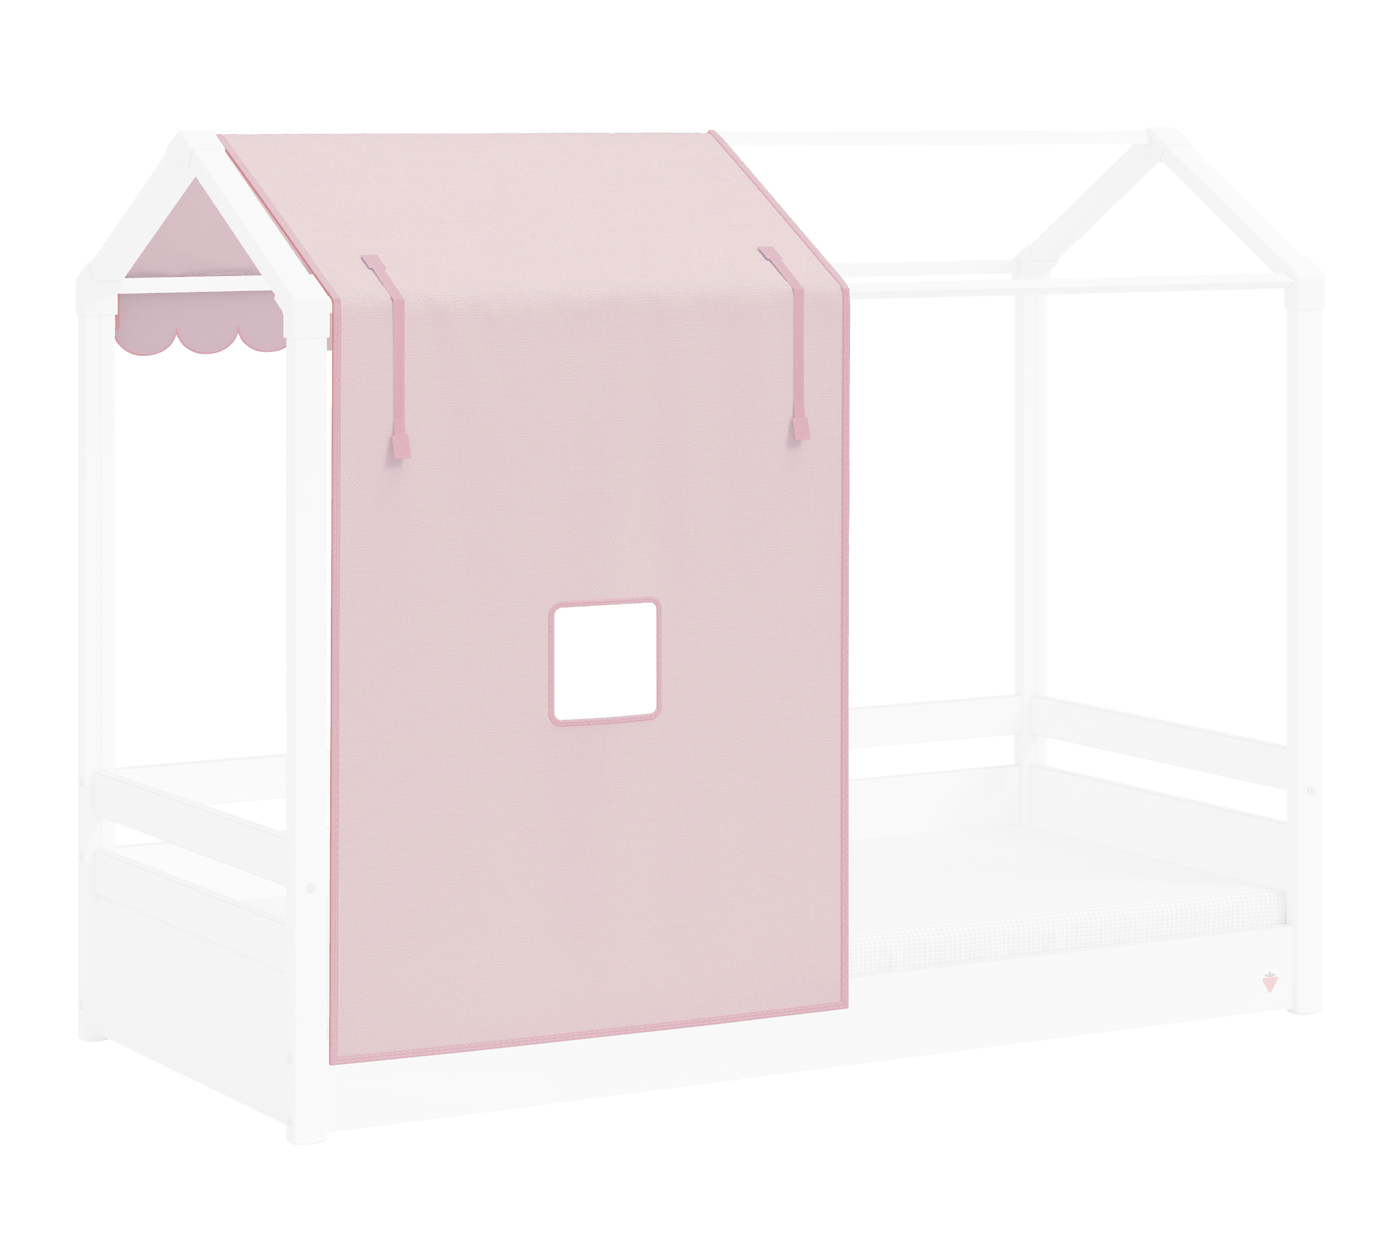 Montes Gjysmë Tendë Rozë (Pink) e Shtratit me çati të drejtë